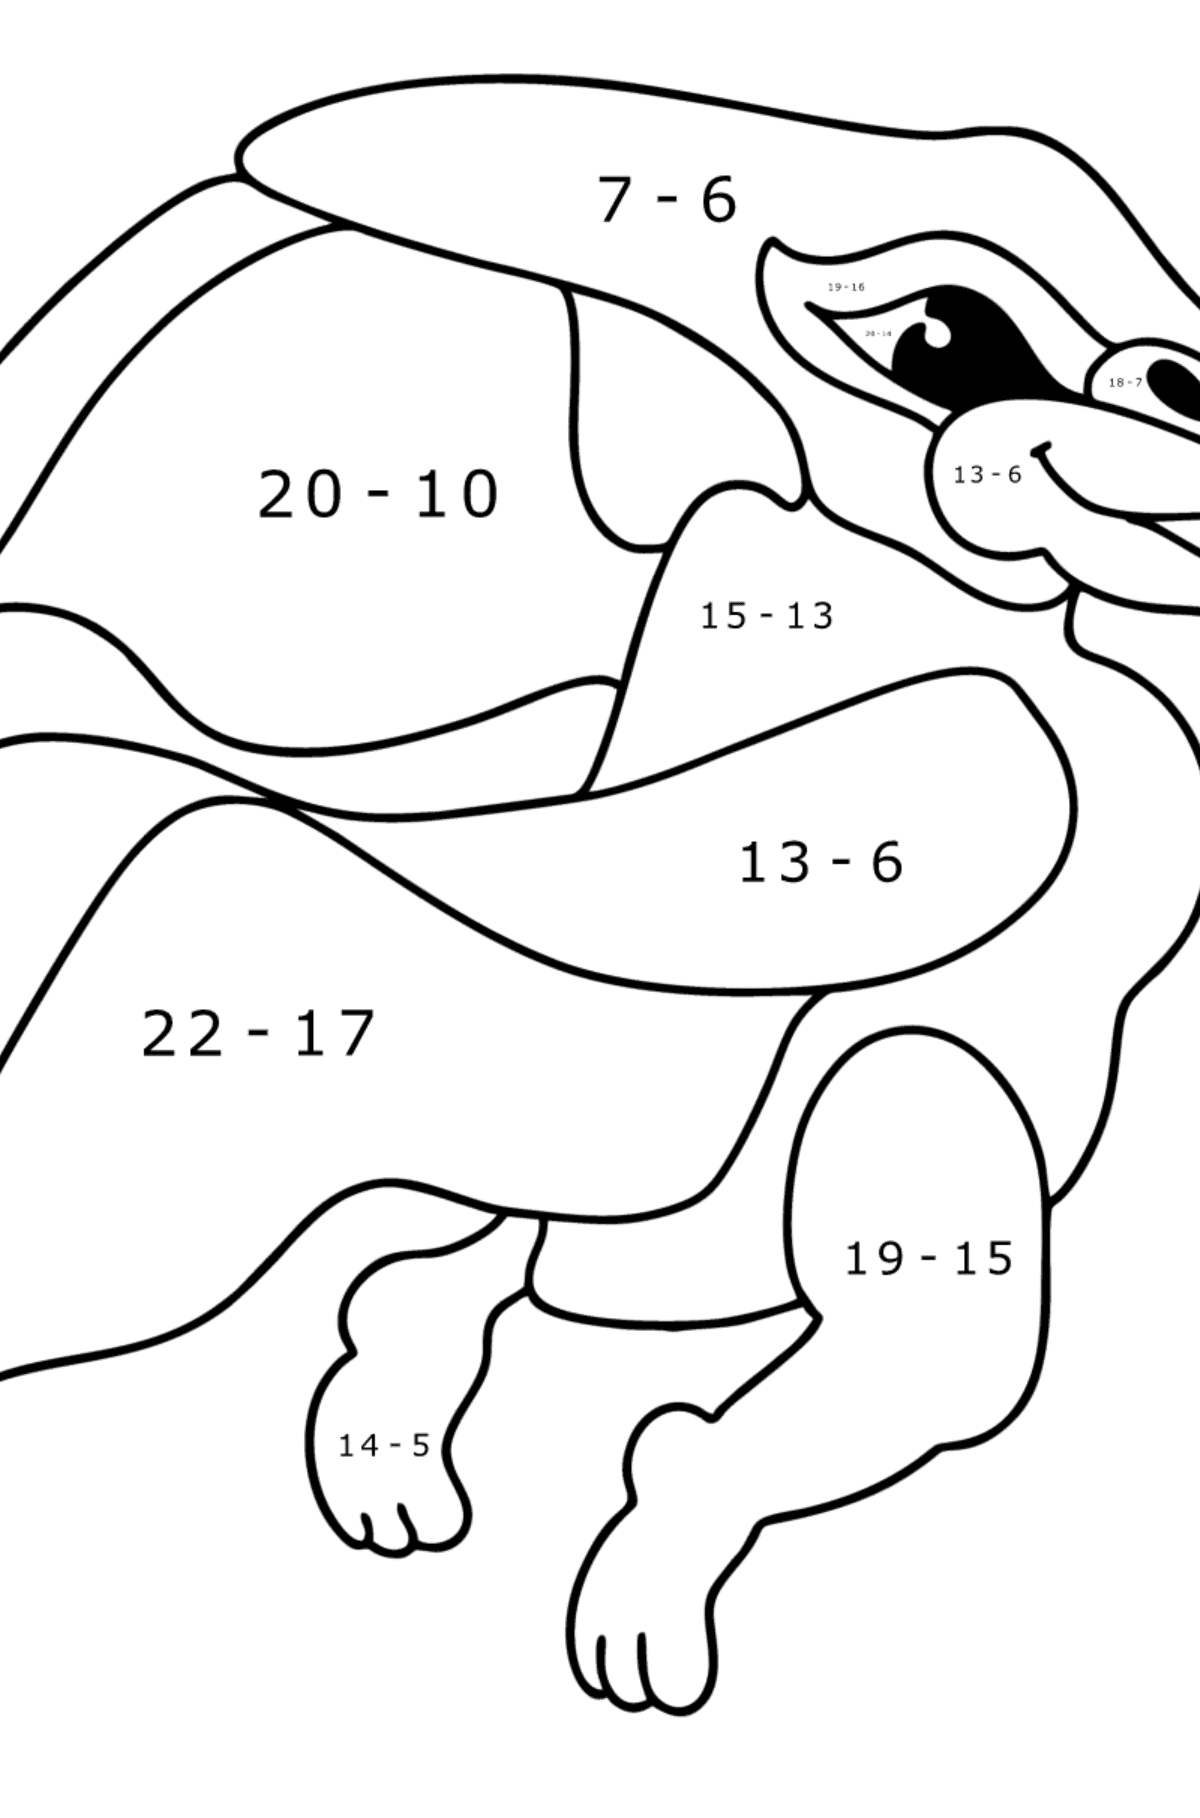 Ausmalbild Pteranodon - Mathe Ausmalbilder - Subtraktion für Kinder